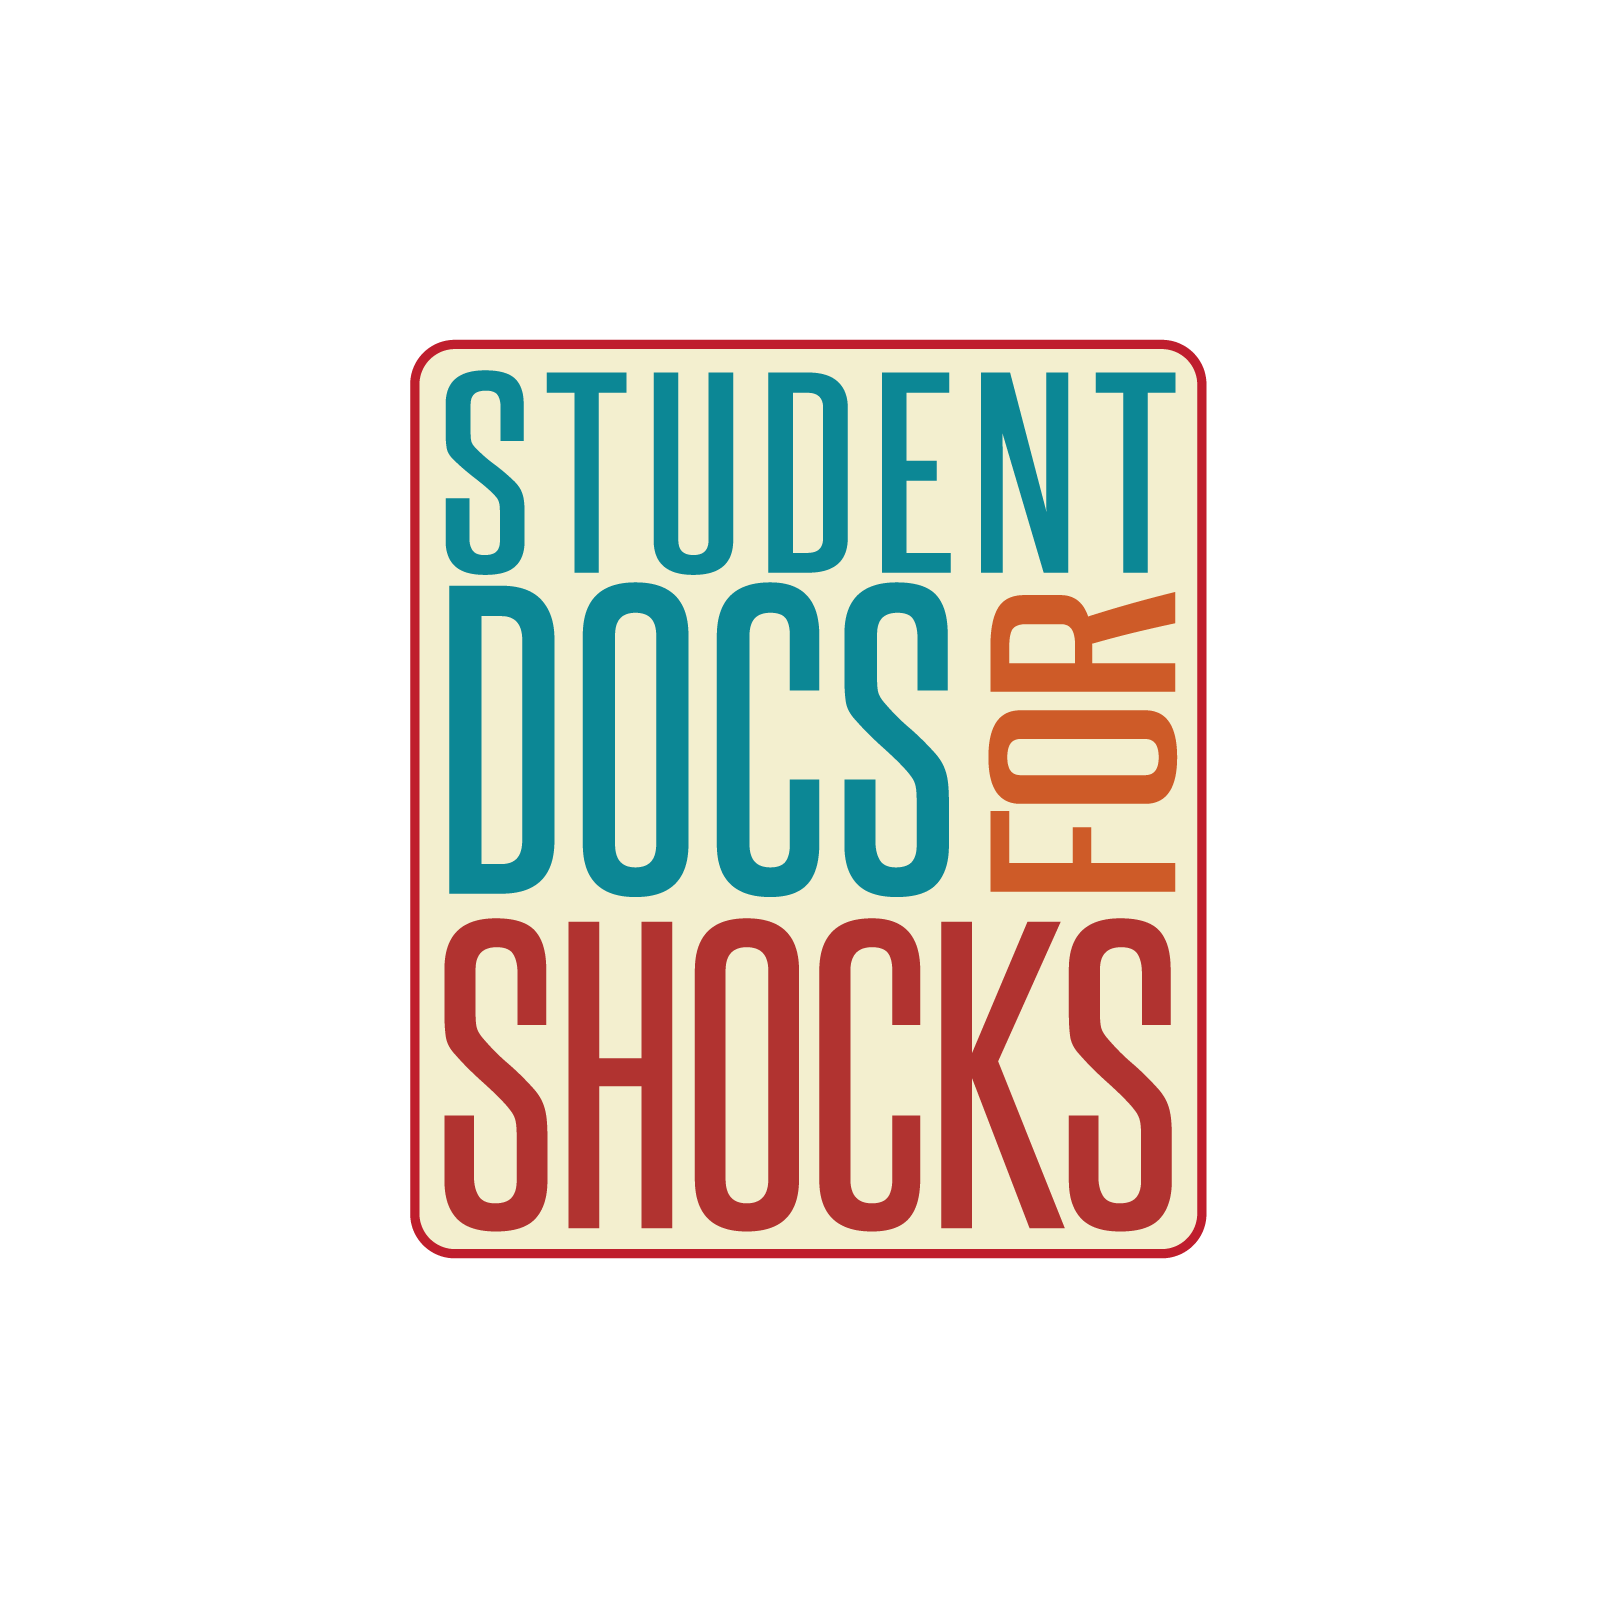 Student Docs for Shocks logo